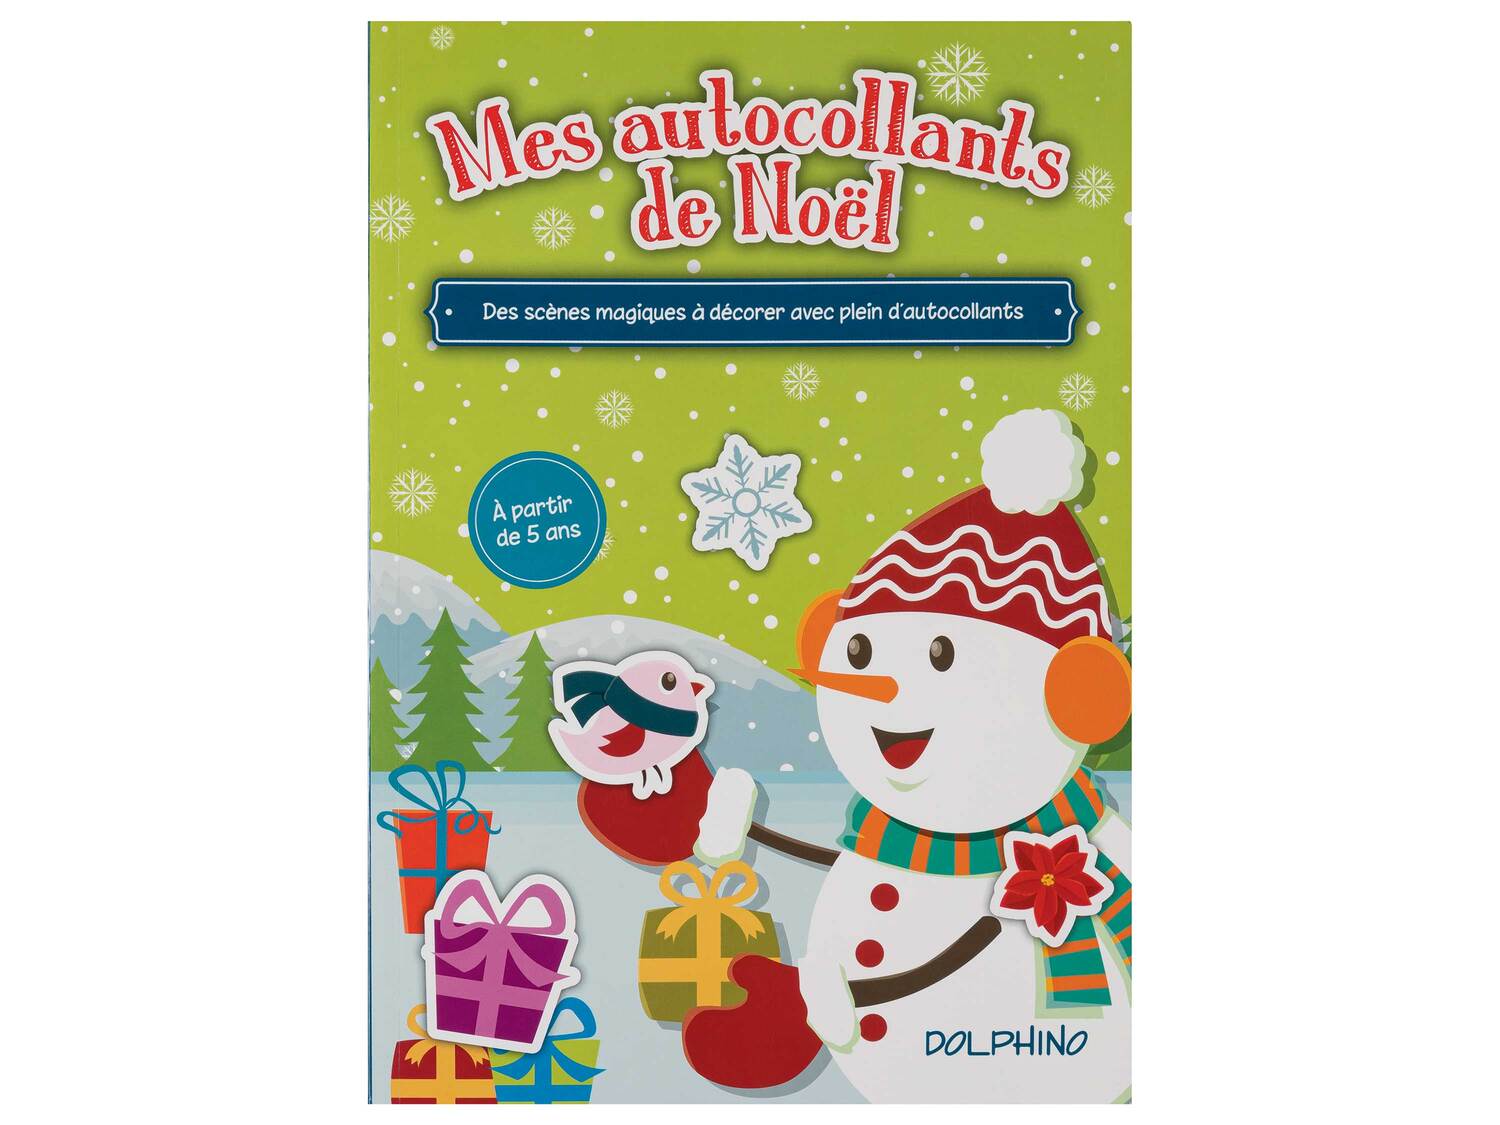 Livre de Noël , le prix 2.99 €  
-  Autres modèles disponible dans nos supermarchés